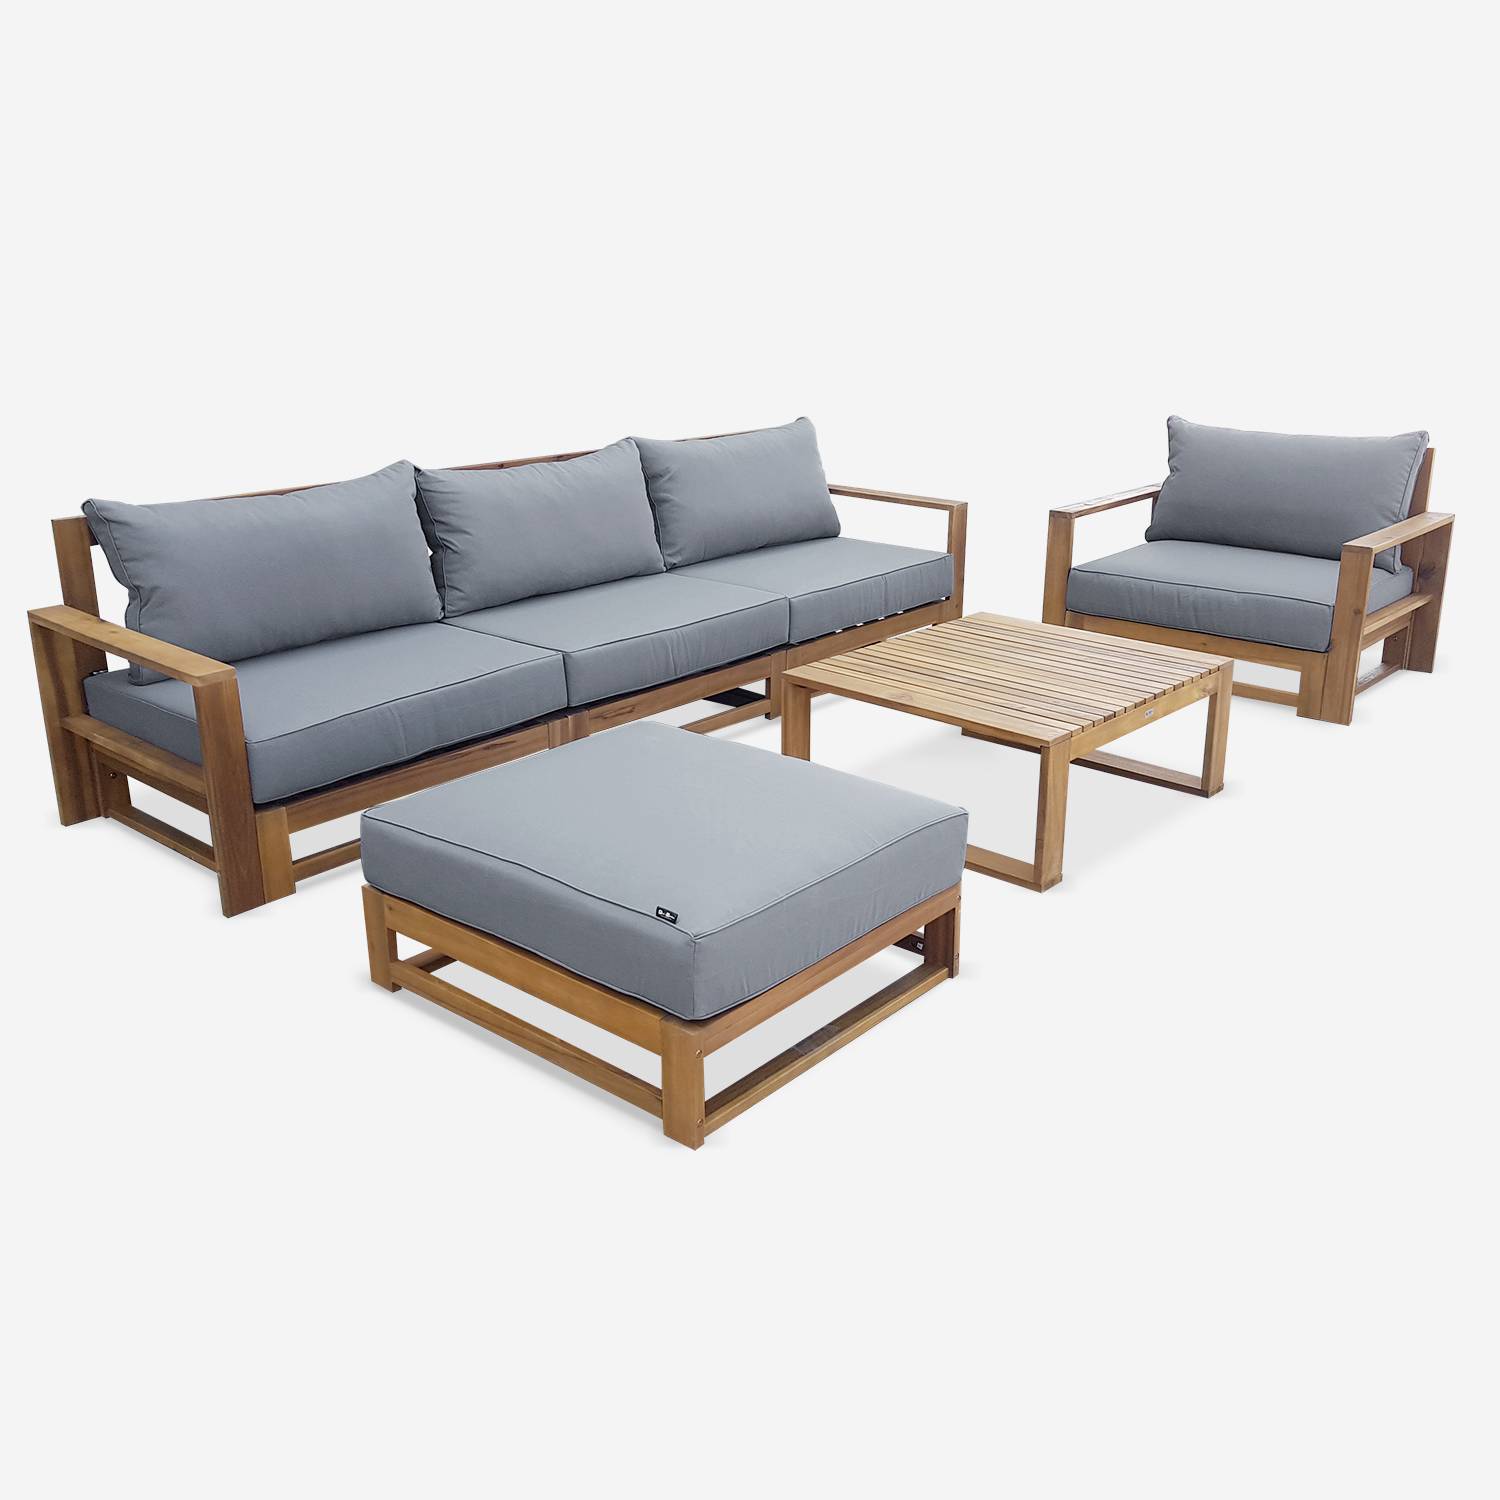 Salon de jardin en bois 5 places - Mendoza - Coussins gris, canapé, fauteuils et table basse en acacia, 6 éléments modulables, design Photo4